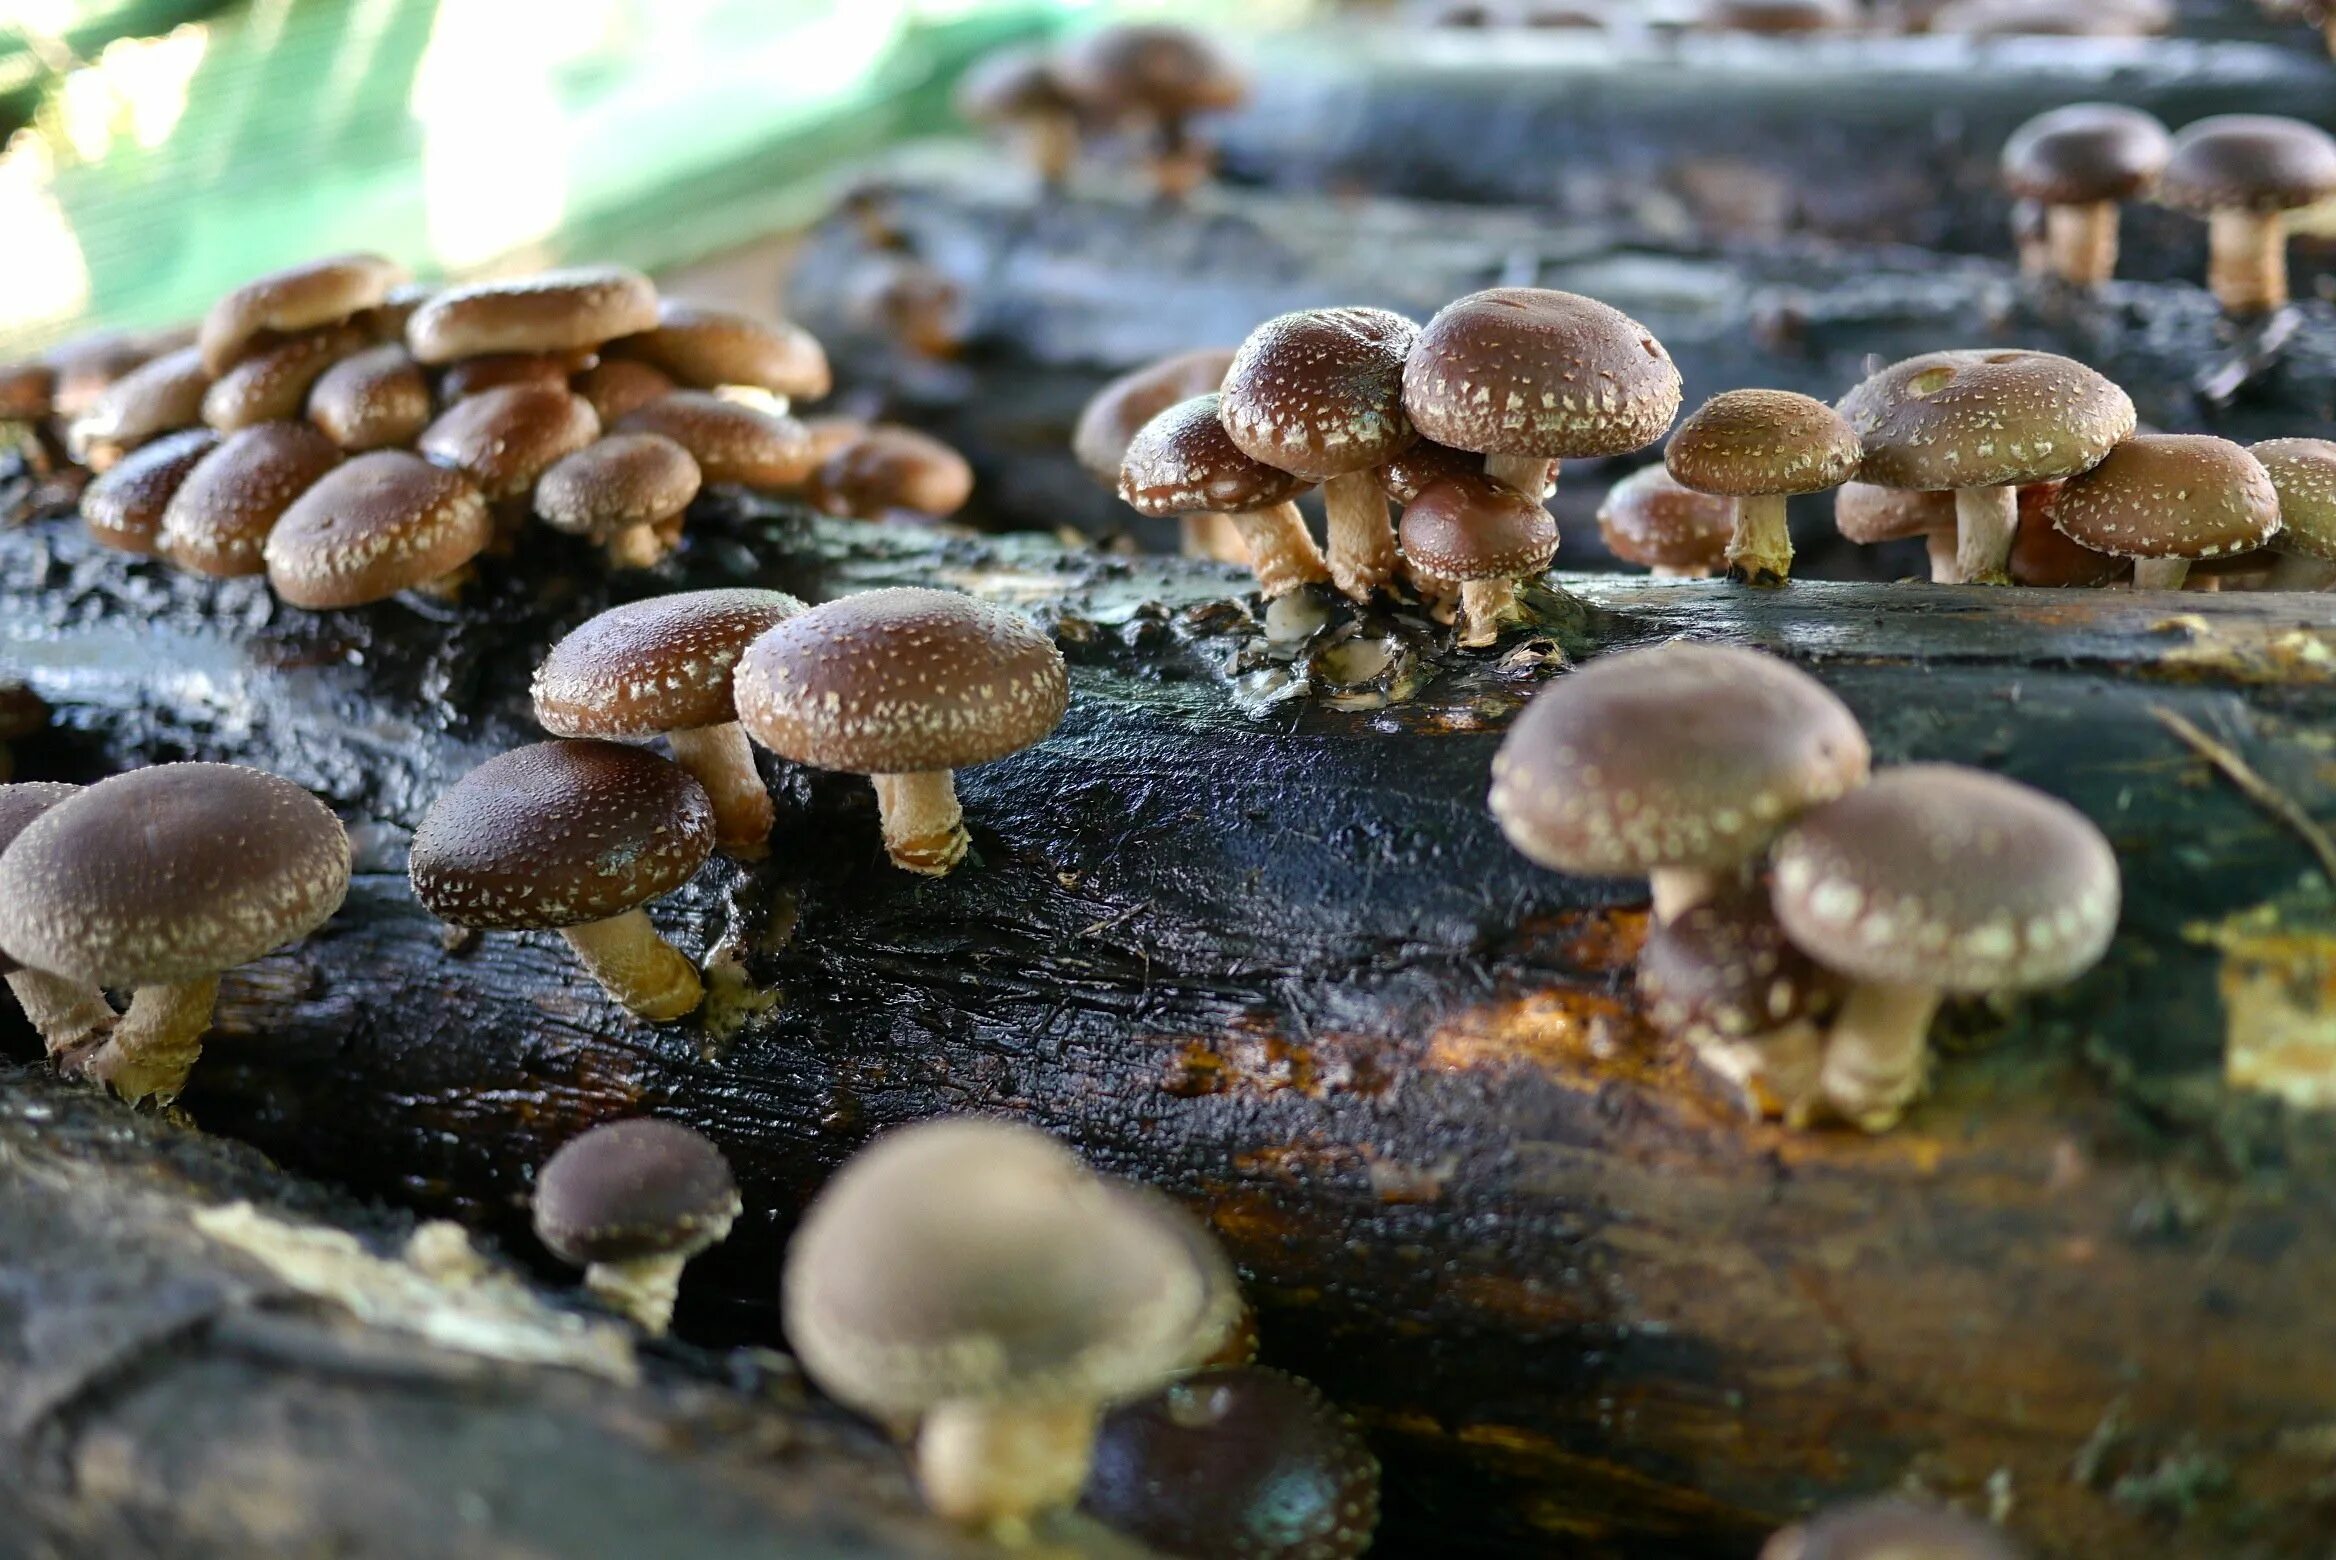 Шиитаке грибы Императорский шампиньон. Японские грибы шиитаке. Шиитаке Lentinus edodes. Опята шиитаке.